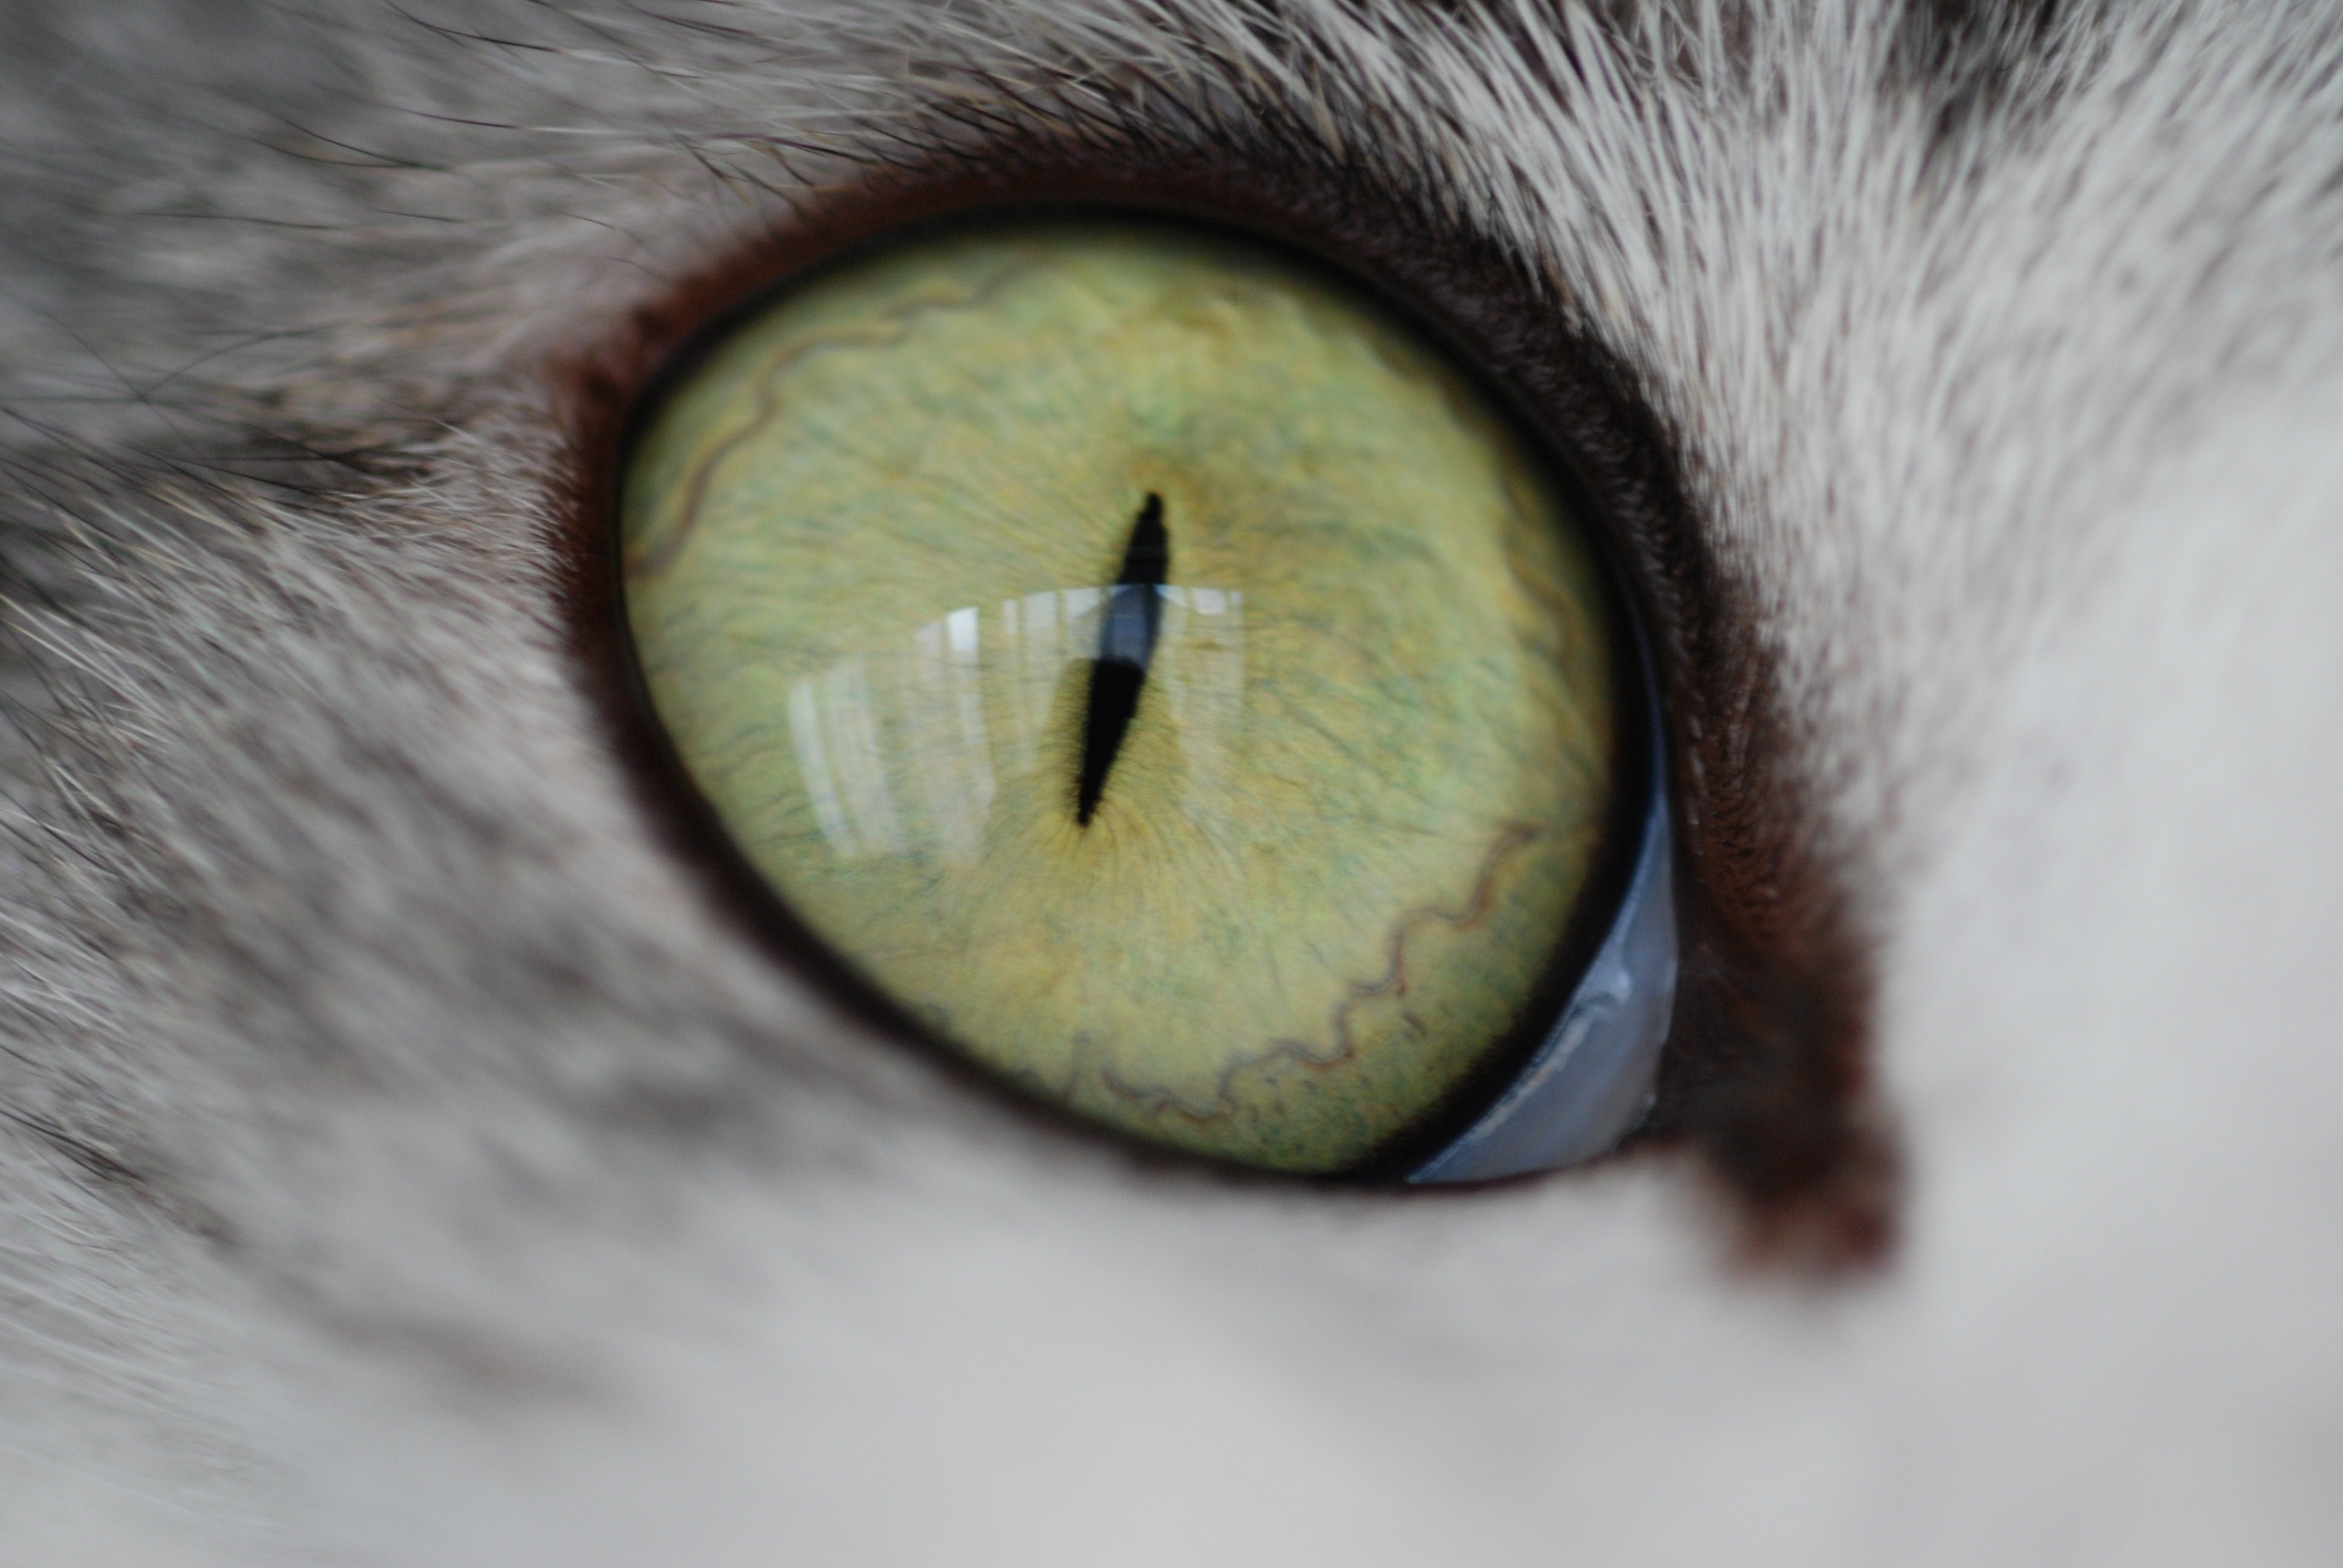 Радужка кошки. Мигательная перепонка (третье веко). Глаза кошки. Зрачок кошки. Кошачий глаз.